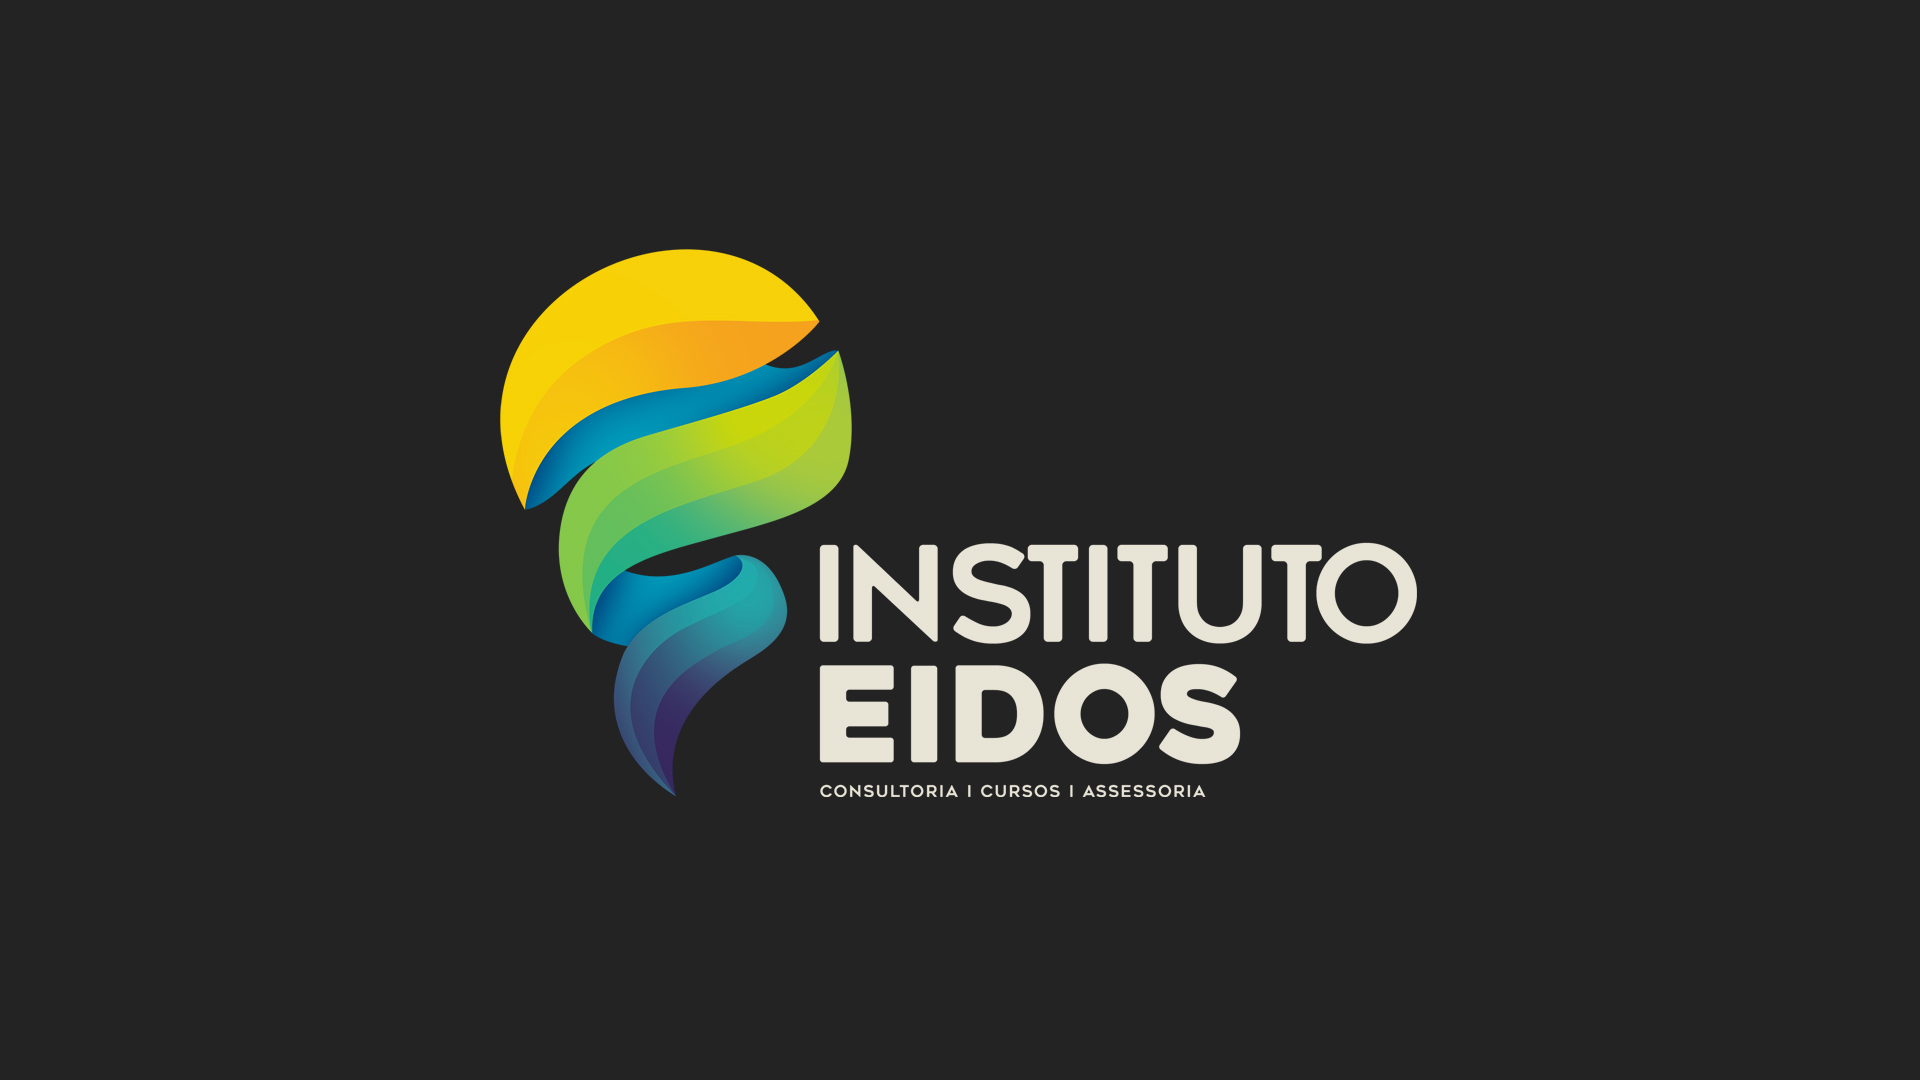 (c) Institutoeidos.com.br